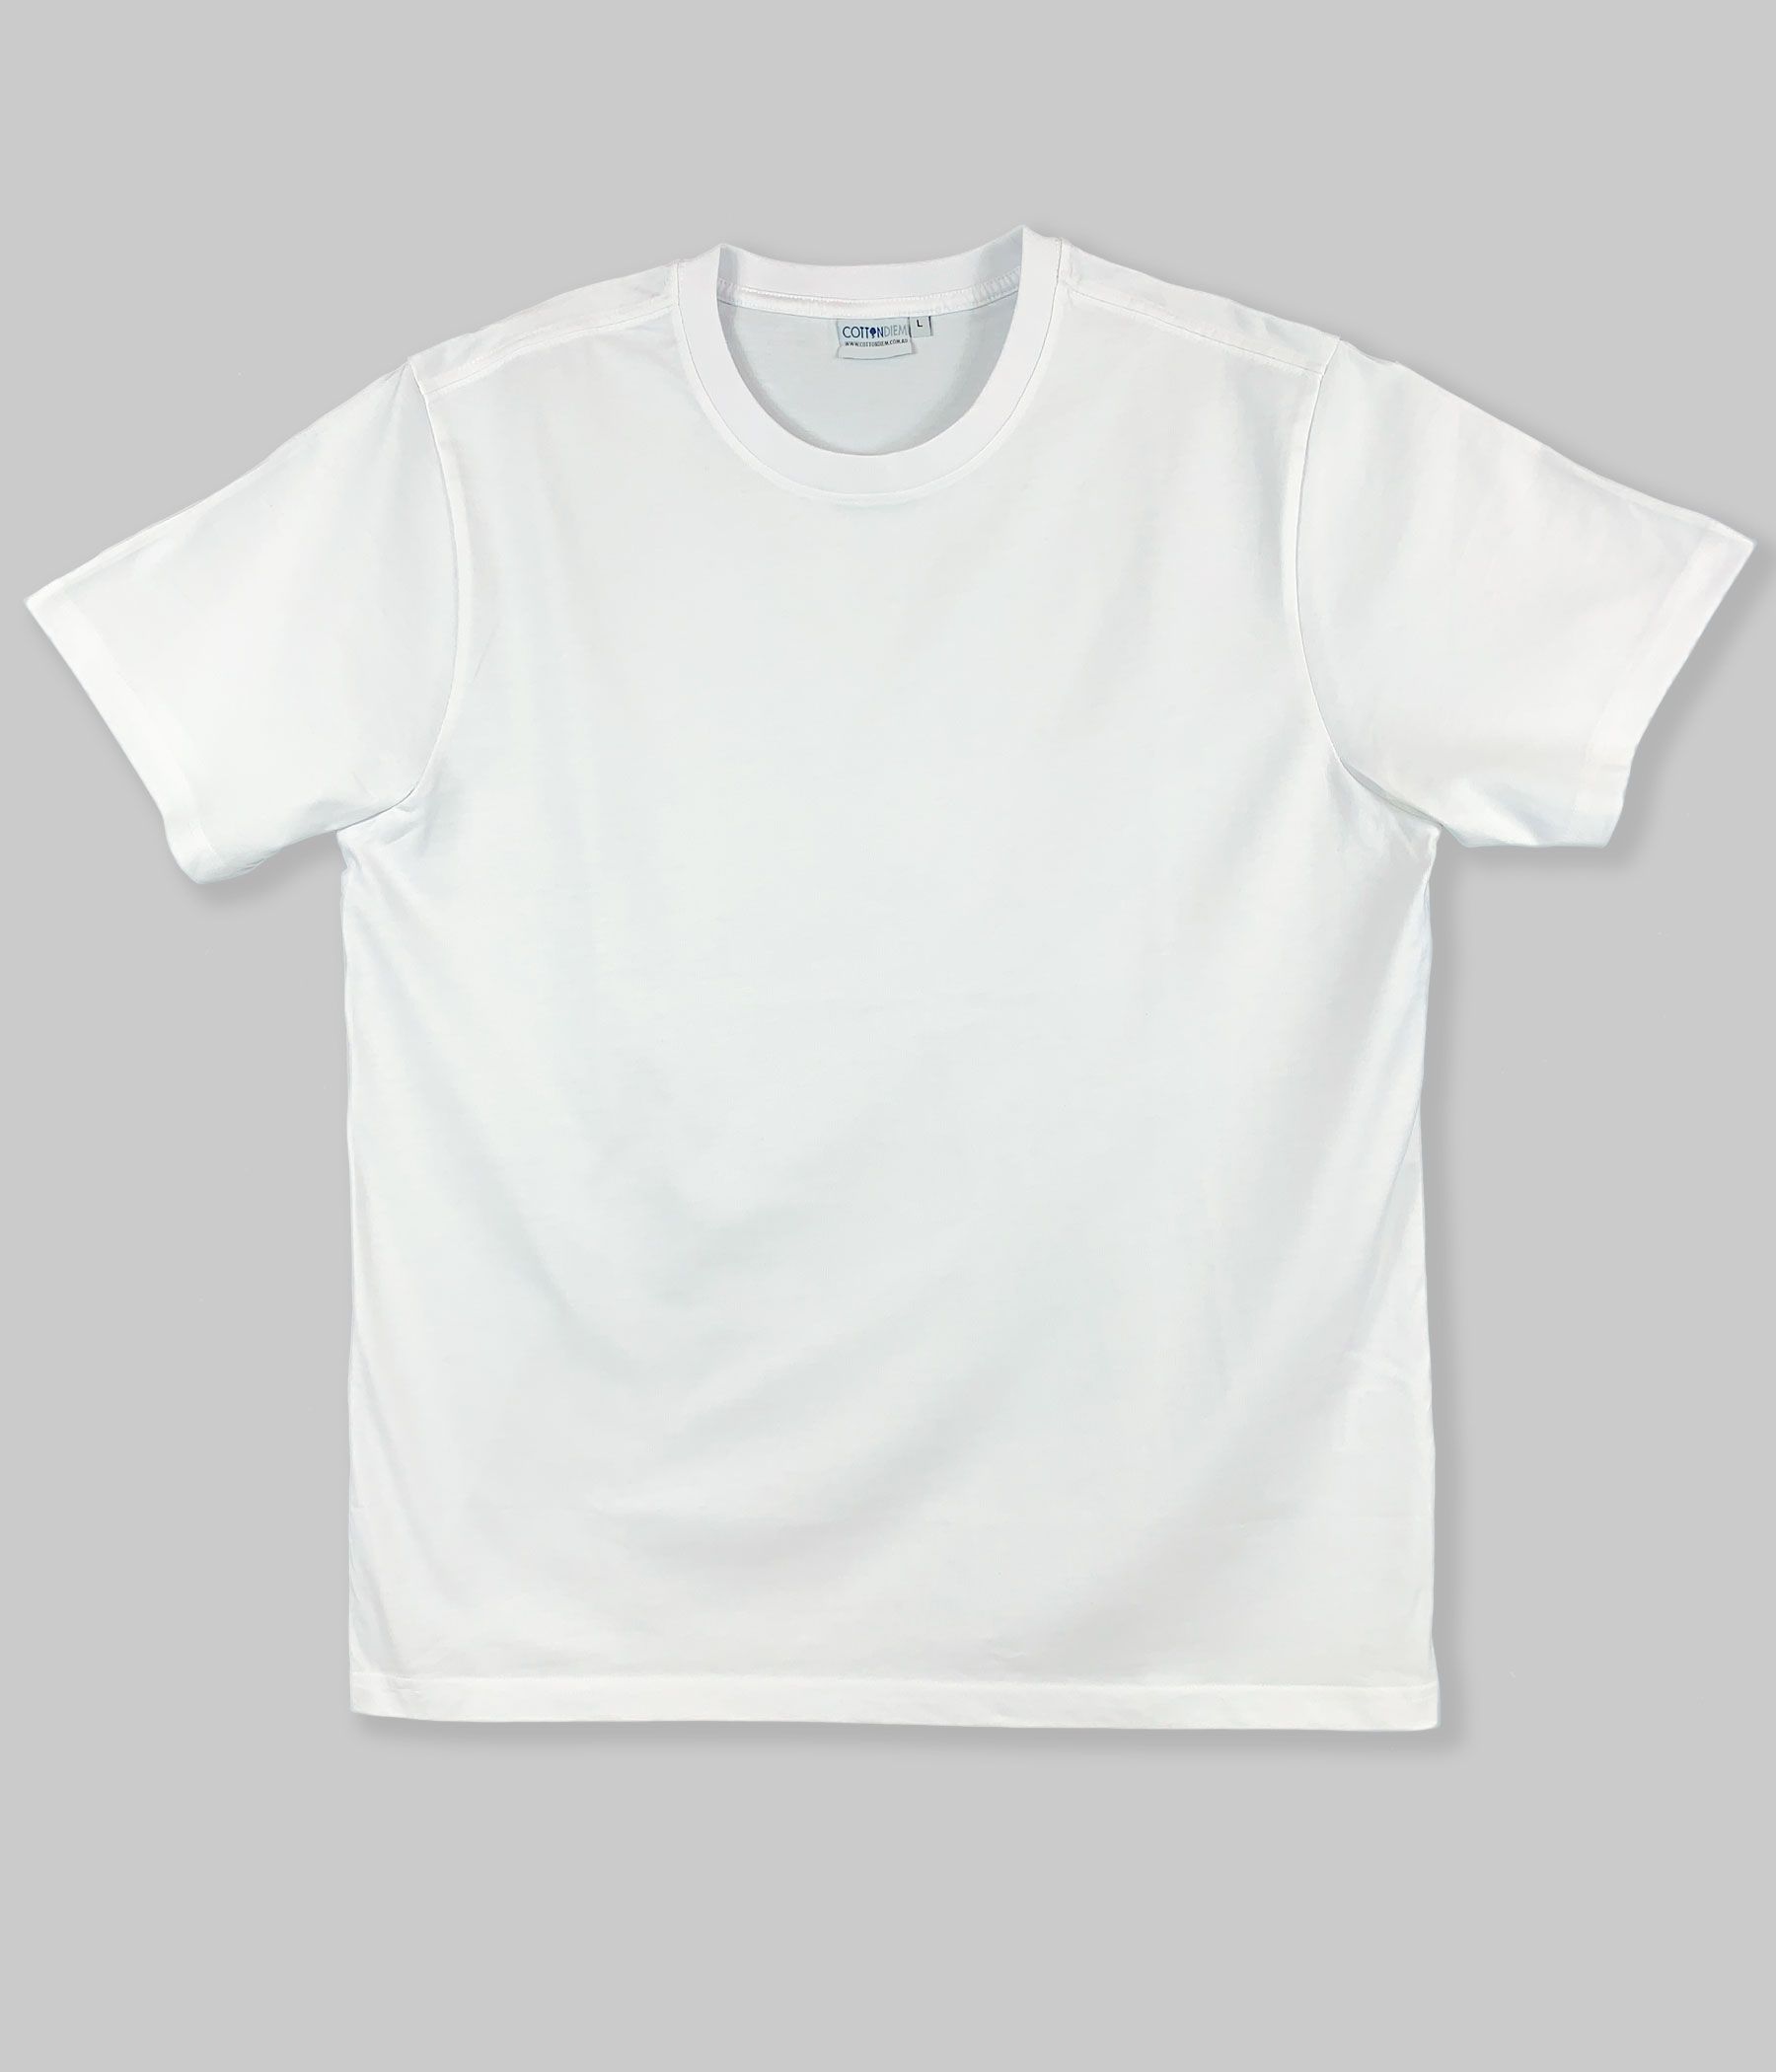 Blank plain t-shirts 200